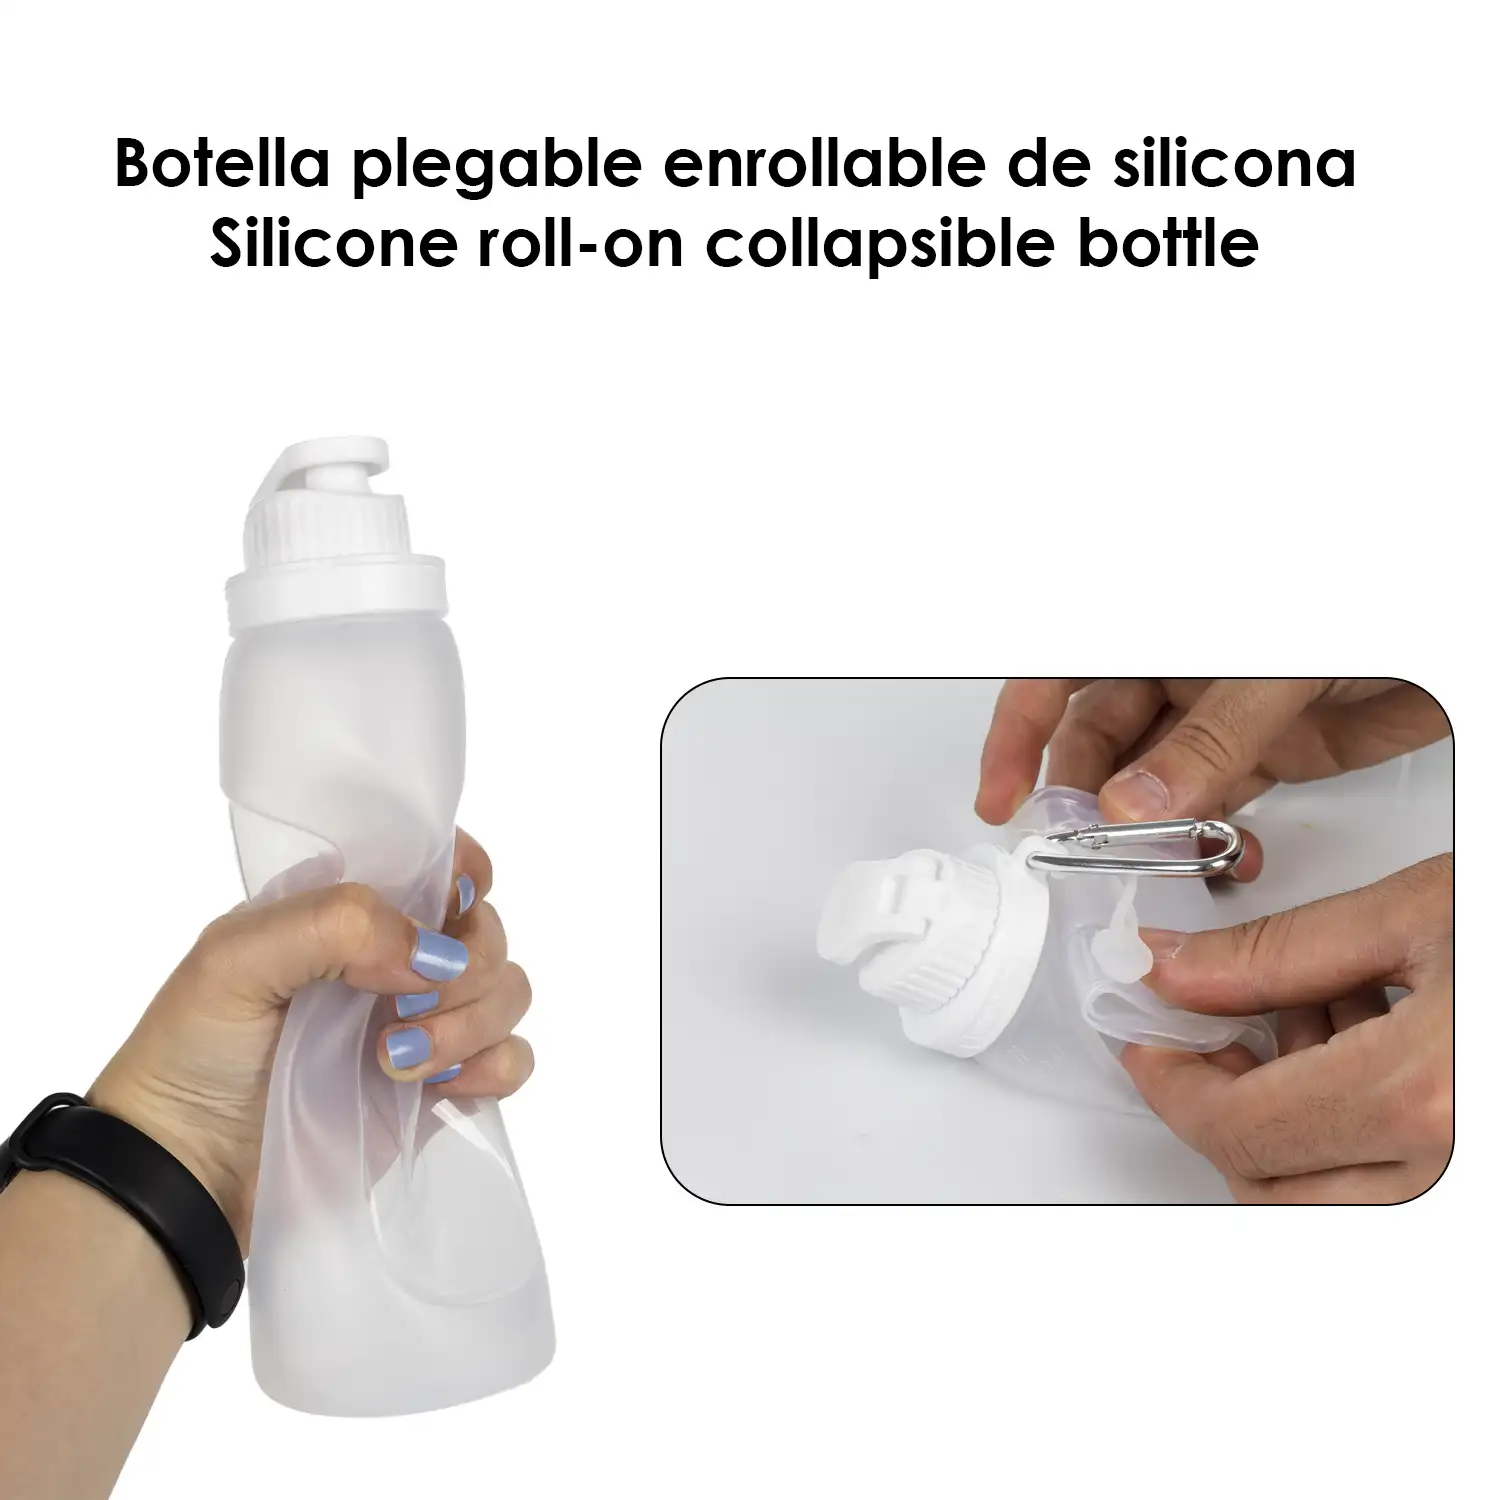 Botella plegable enrollable de 500ml, de silicona de grado alimenticio. Con mosquetón.